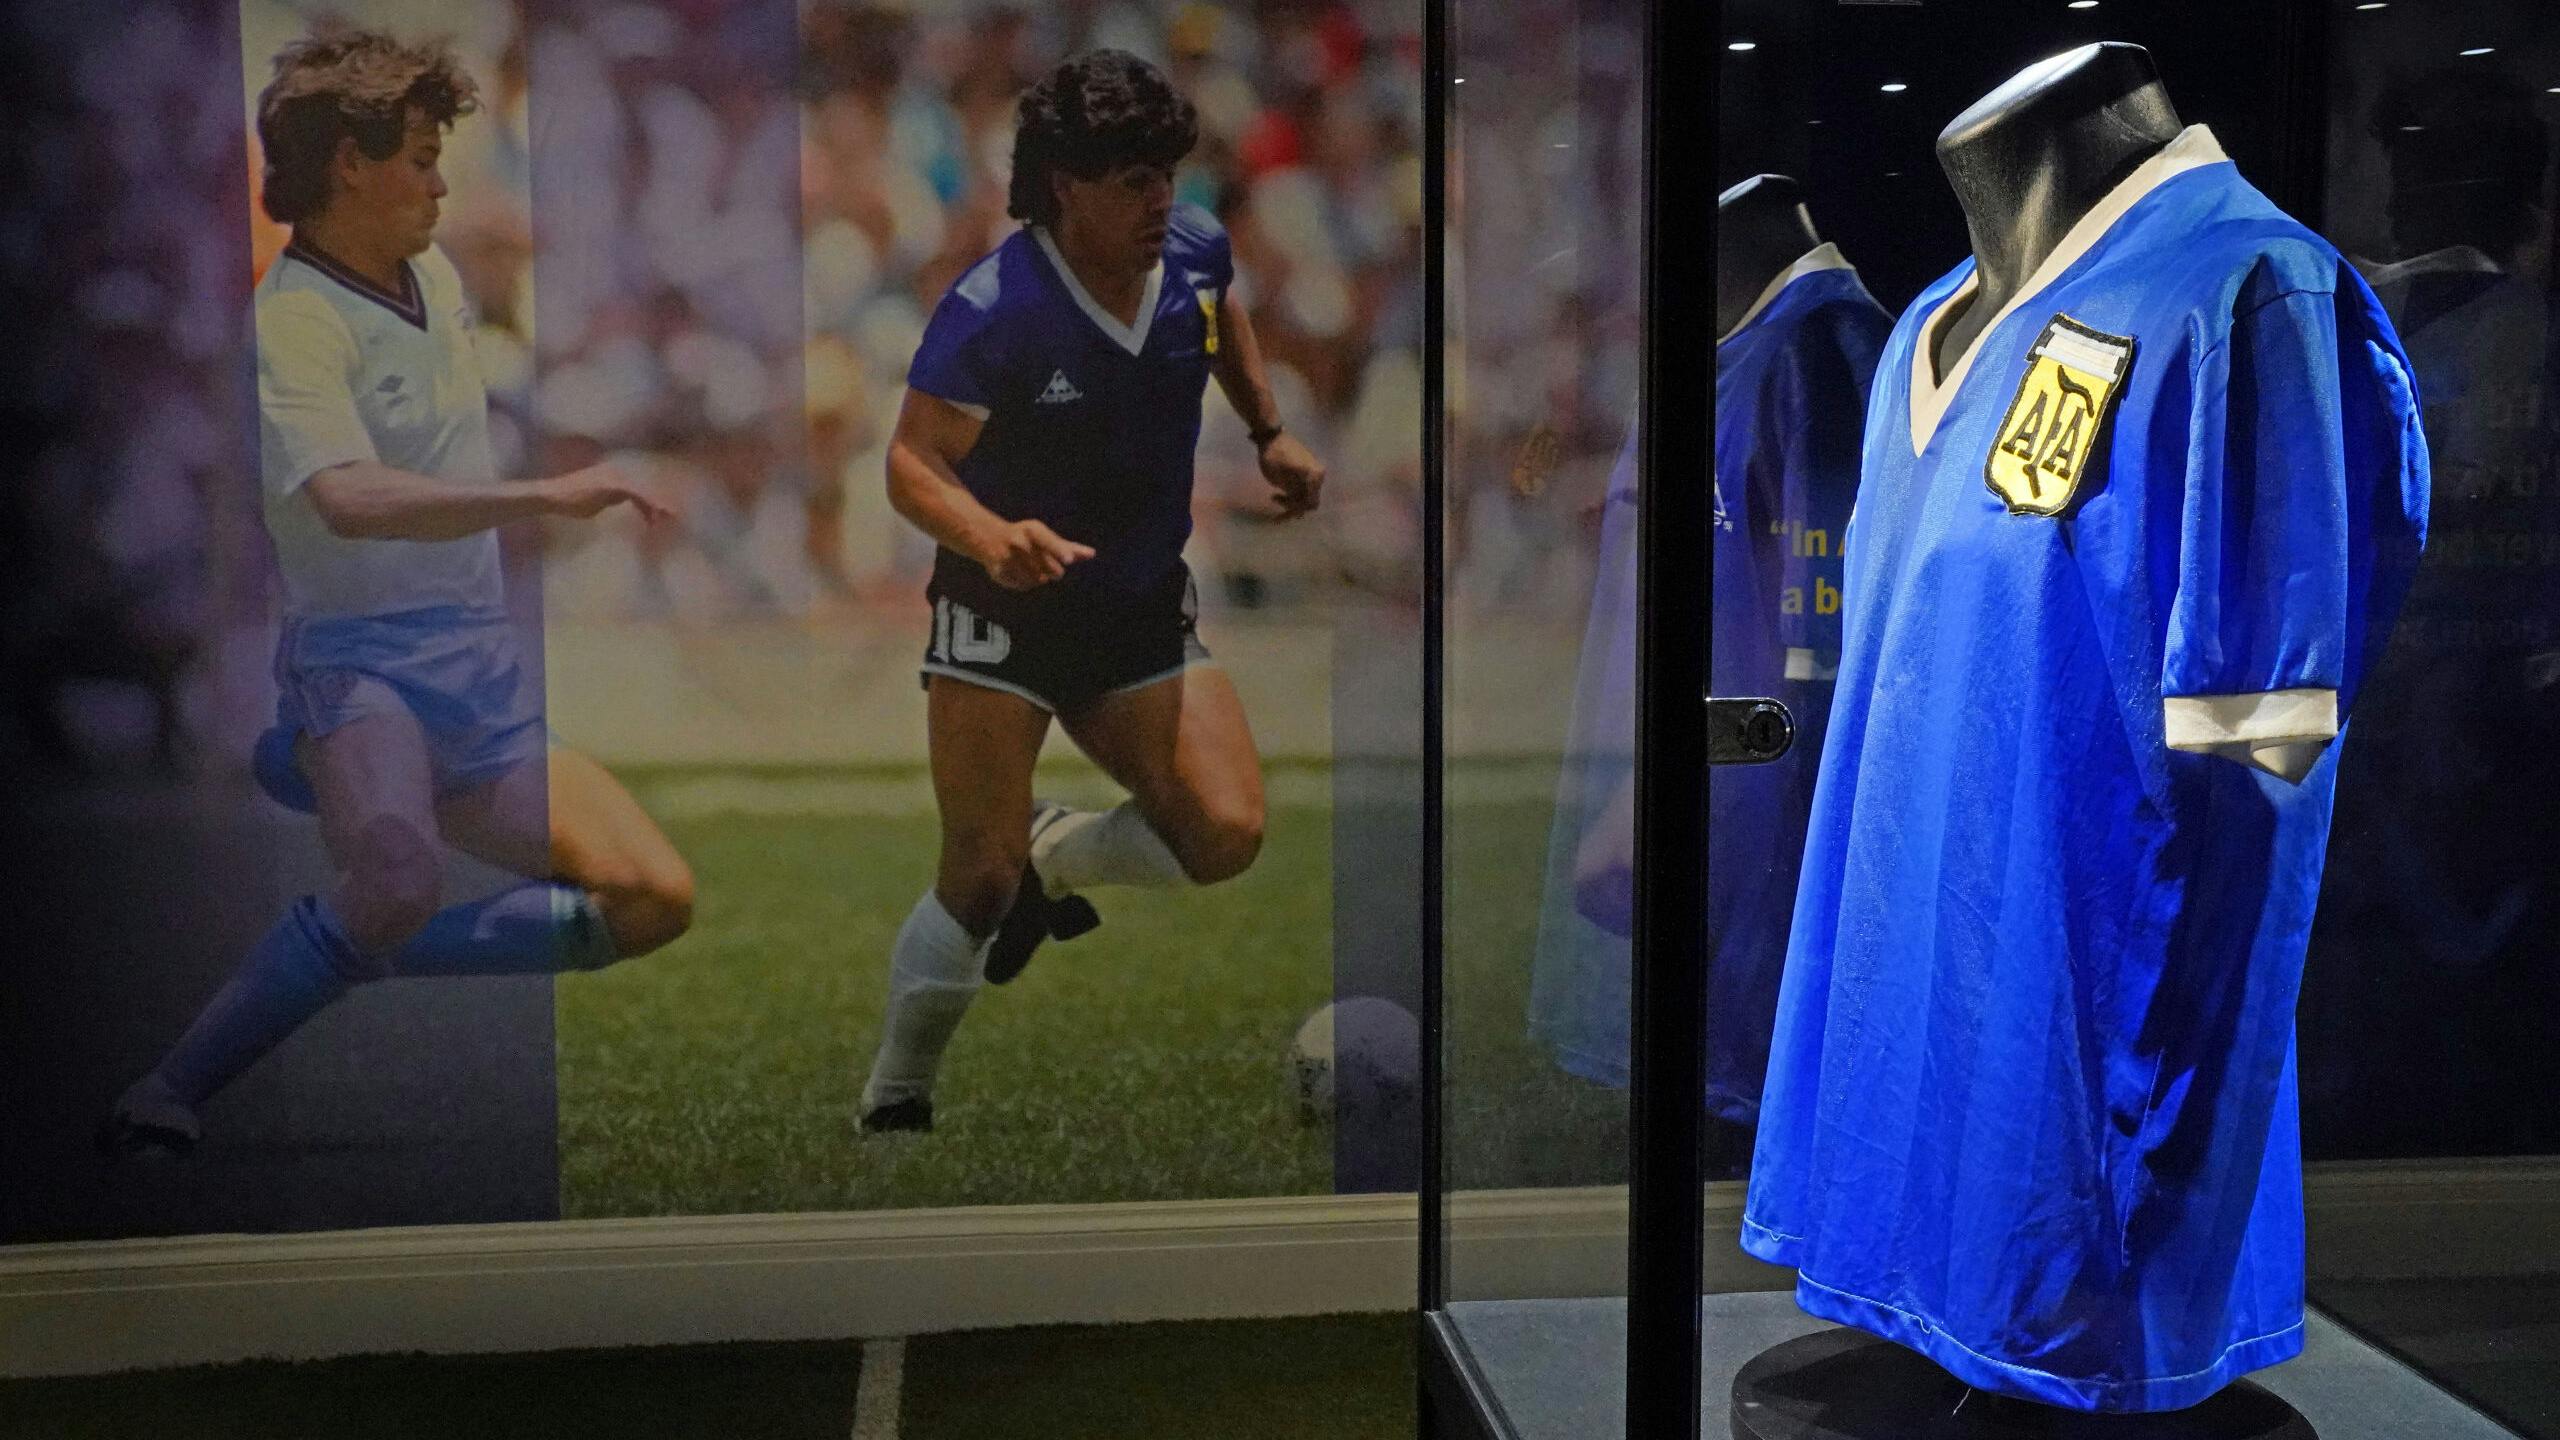 Het desbetreffende(?) shirt van Diego Armando Maradona.